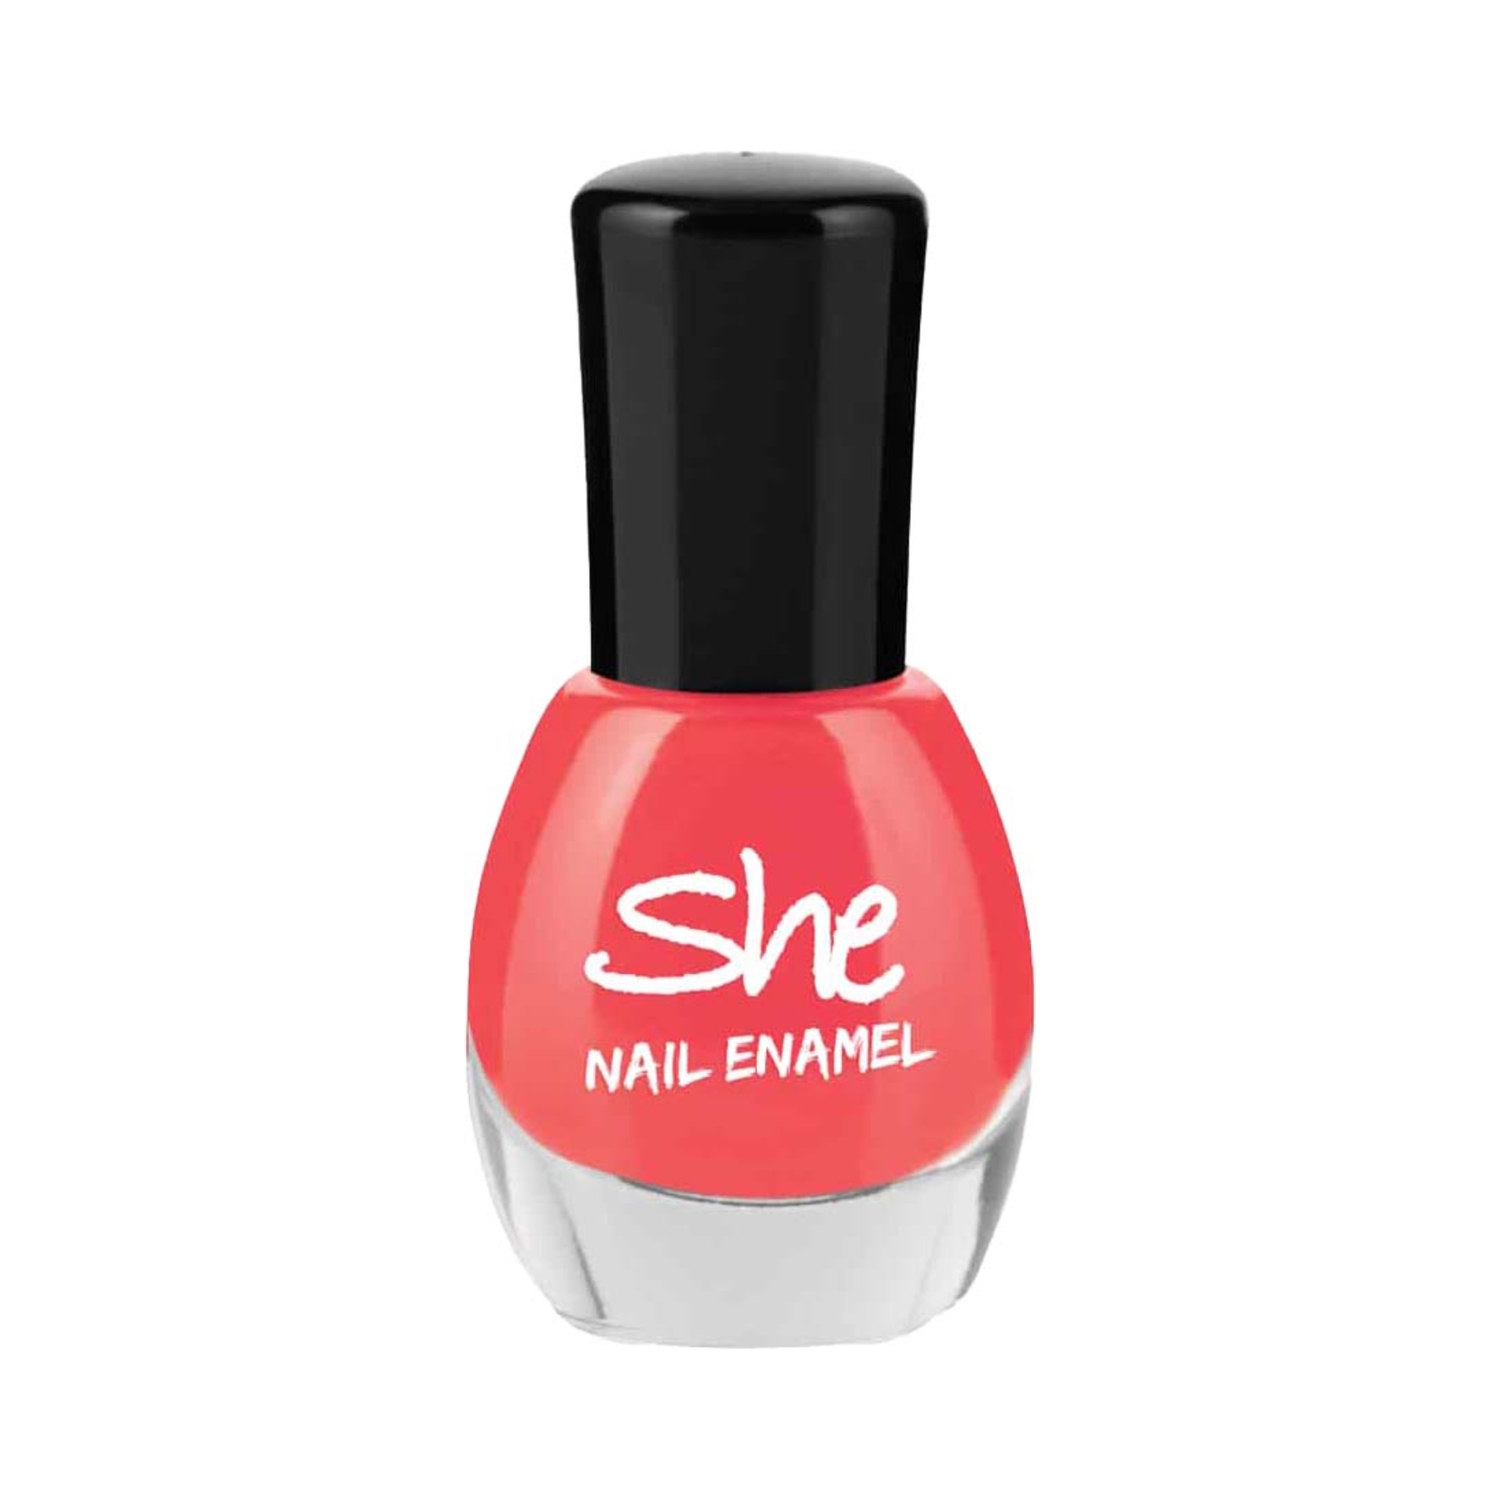 She | She Makeup Nail Enamel - 211 Neon Orange (8ml)